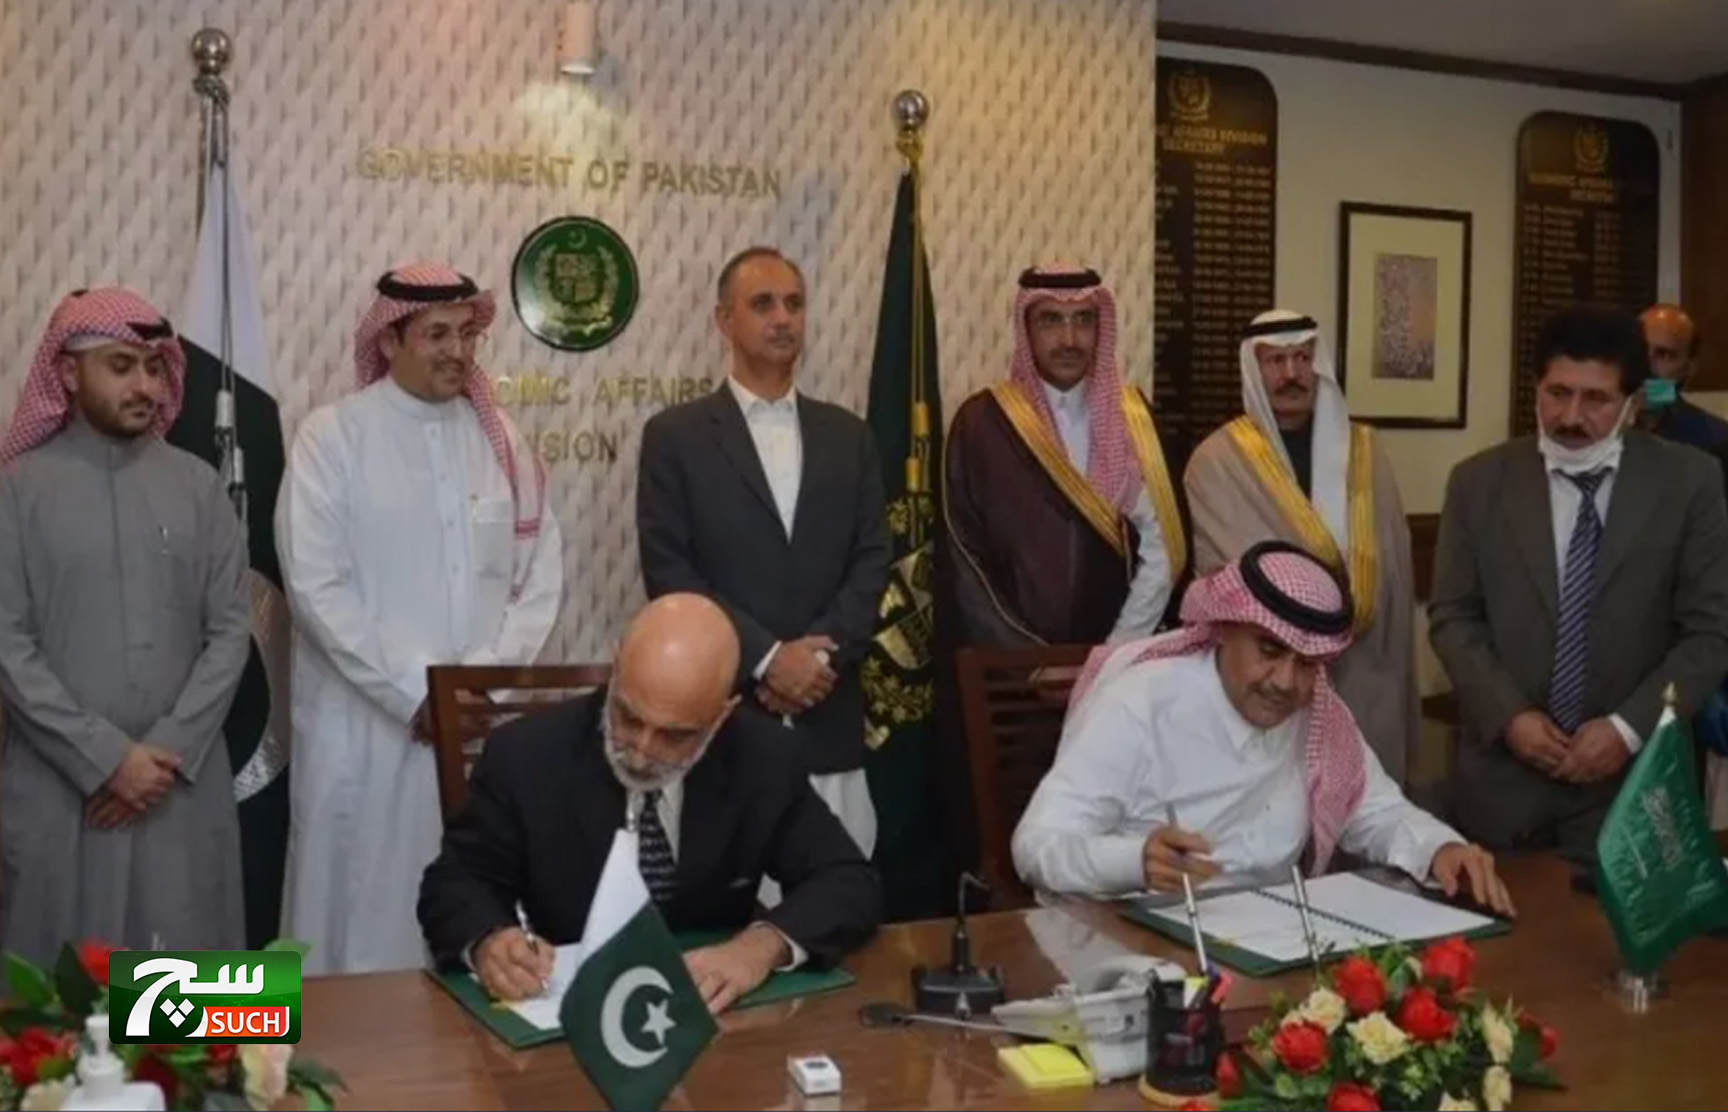 السعودية تدعم باكستان بوديعة وتمول مشتقات نفطية بـ4.2 مليار دولار